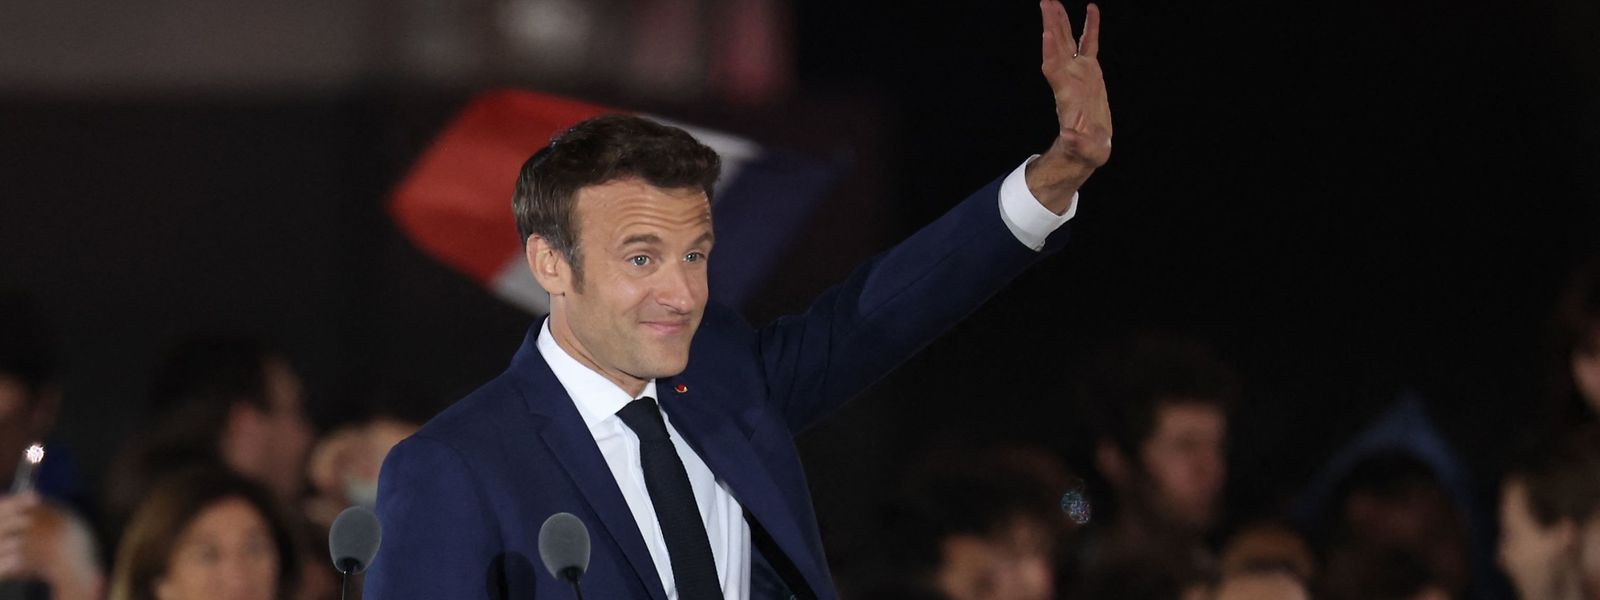 Imagens da festa da reeleição de Emmanuel Macron.